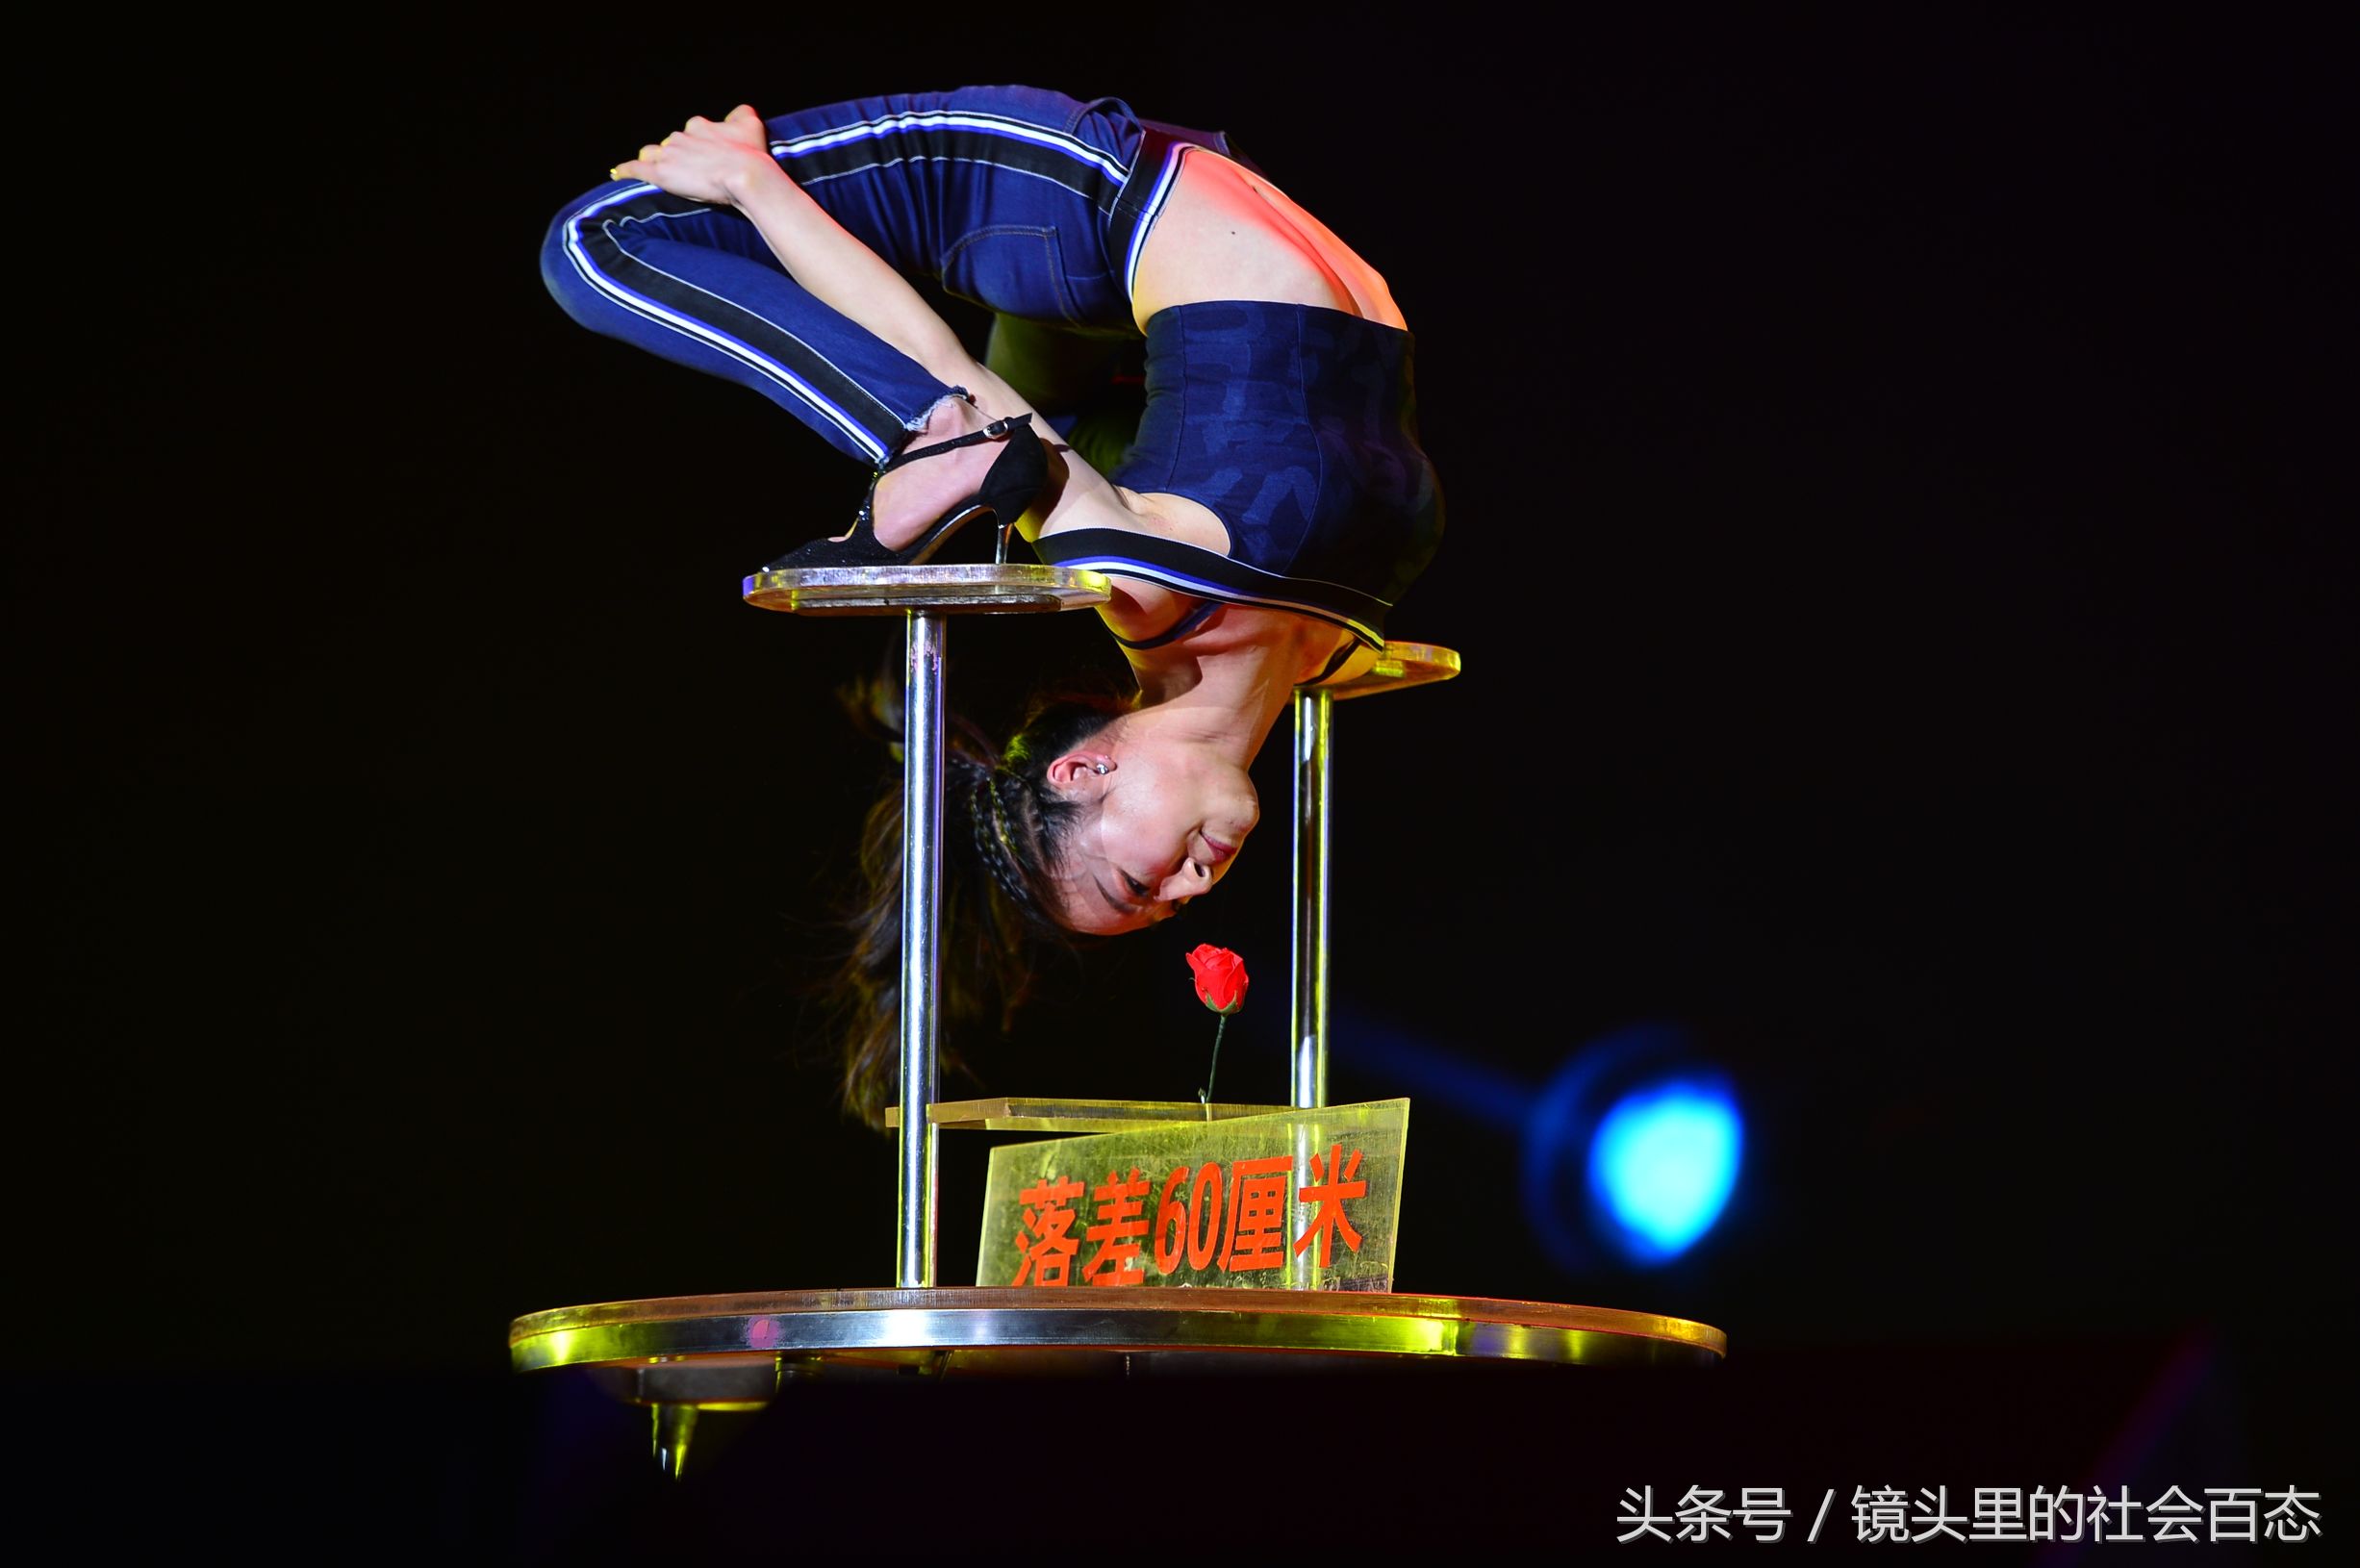 柔术女王刘藤展示力量与柔韧性之美 曾获得吉尼斯世界纪录